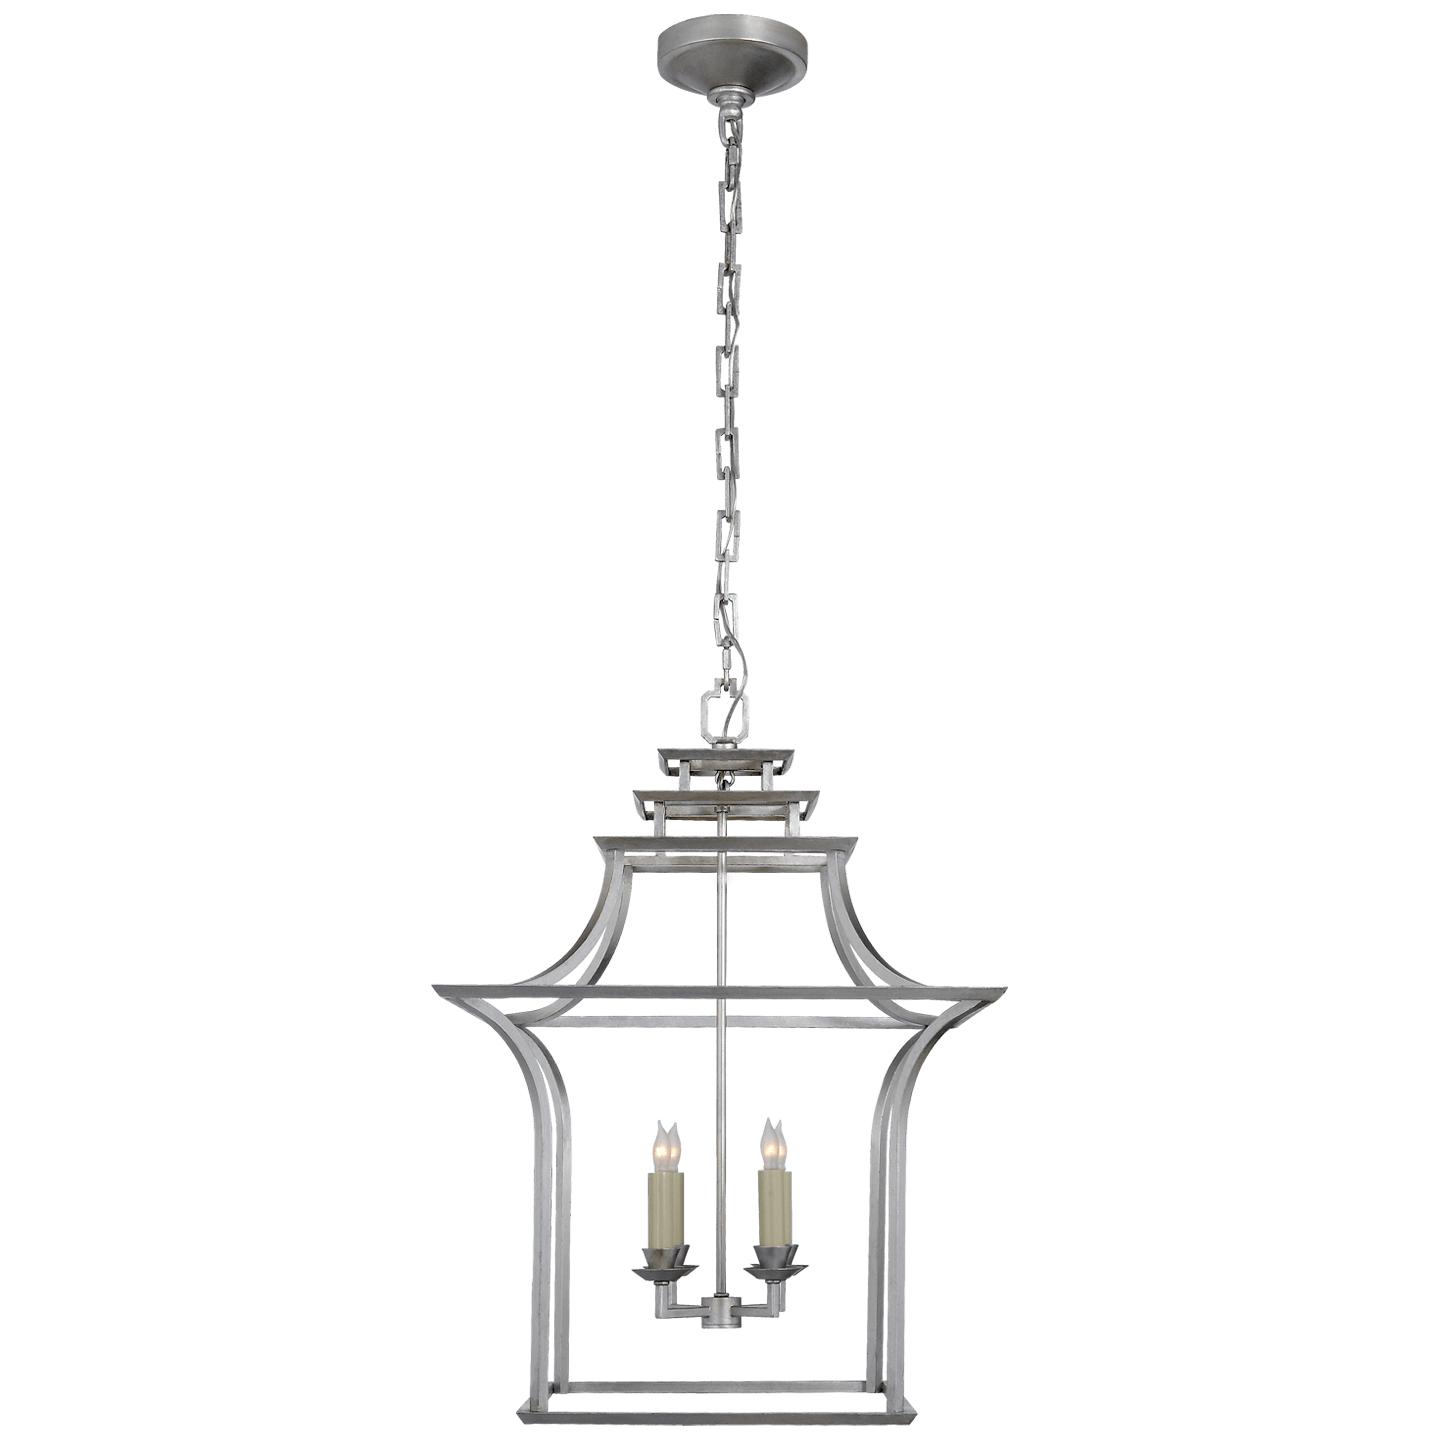 Купить Подвесной светильник Brighton Pagoda Lantern в интернет-магазине roooms.ru